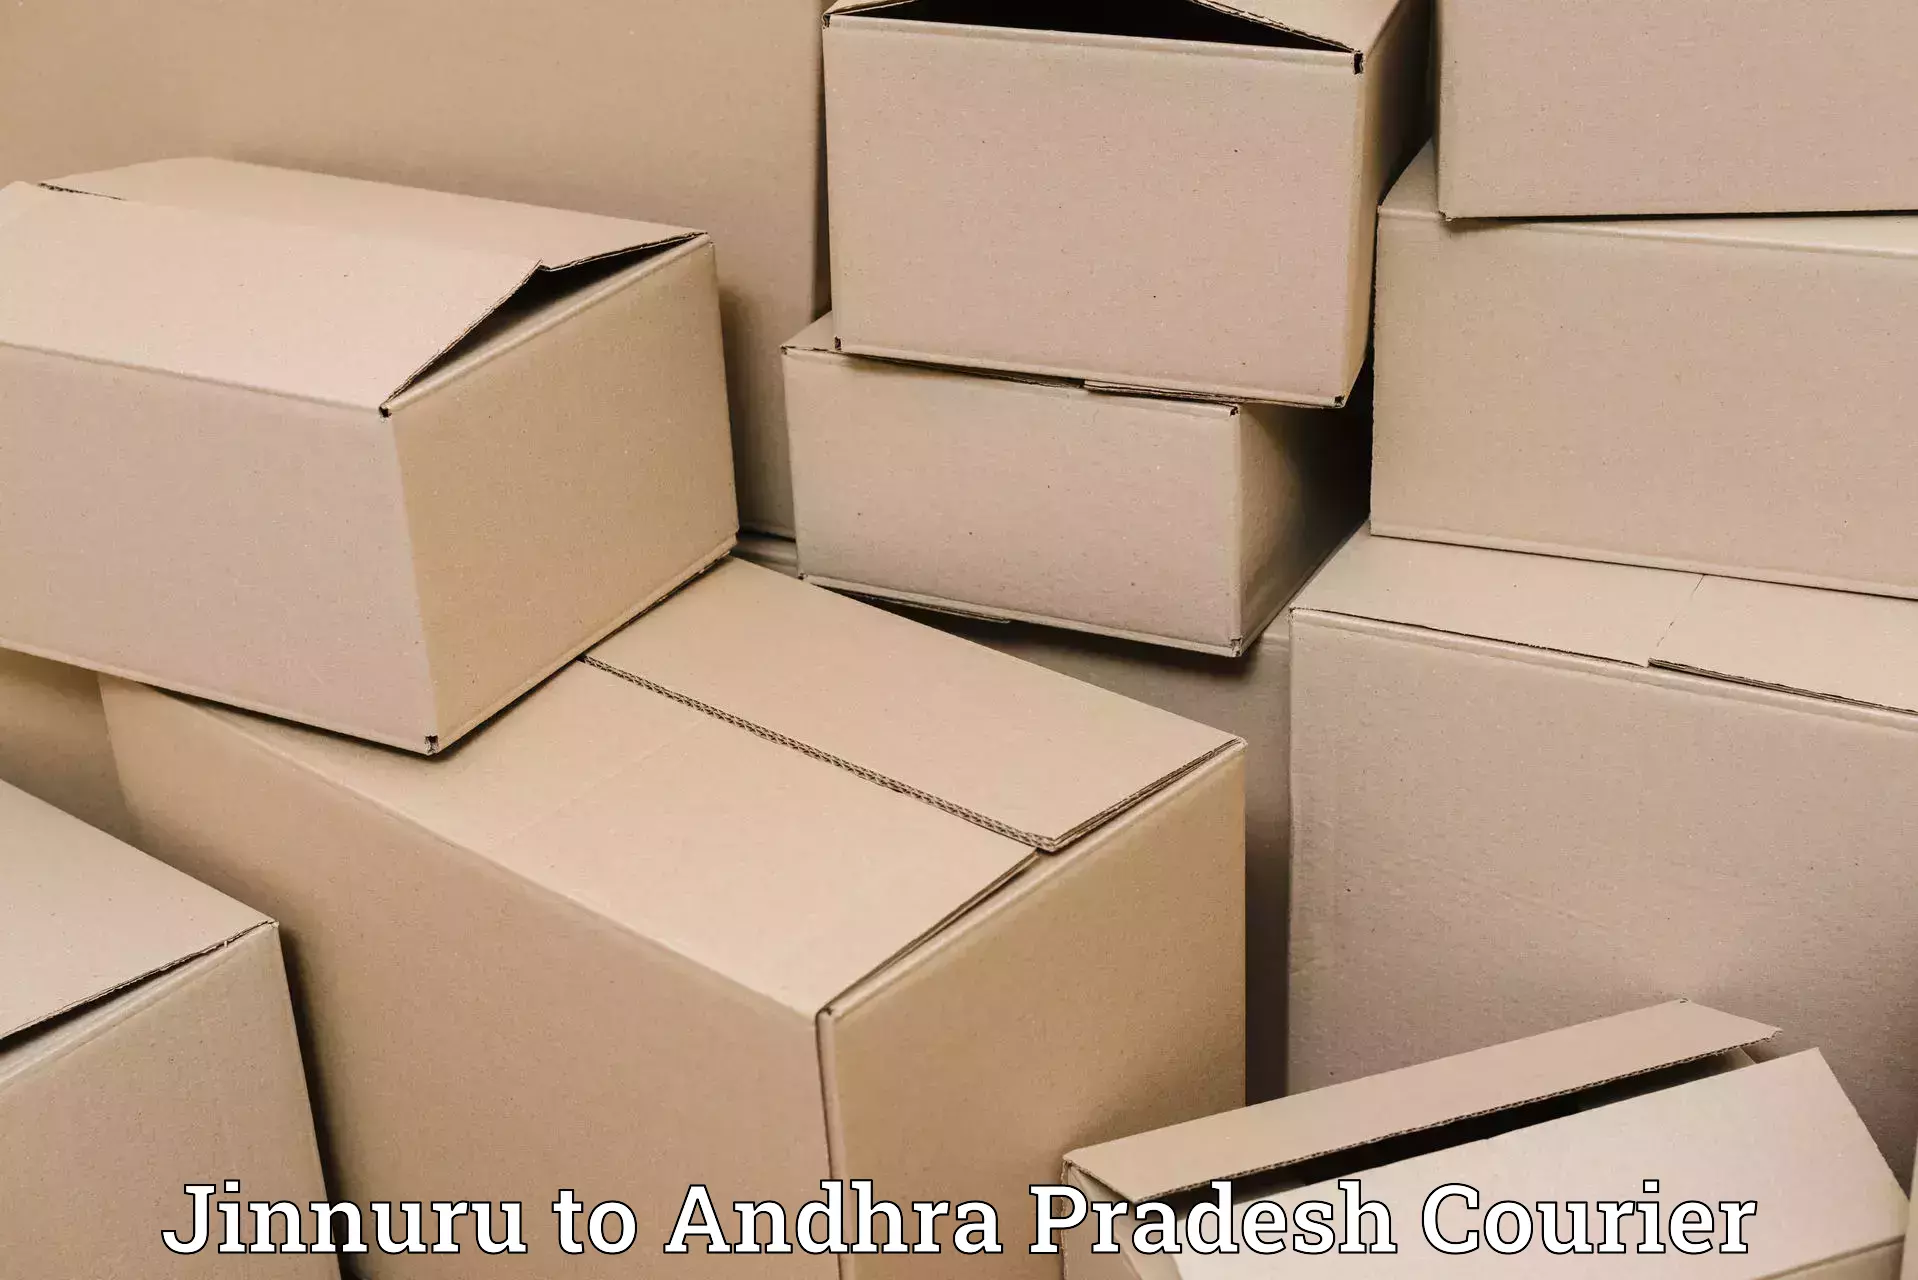 Large package courier Jinnuru to Andhra Pradesh